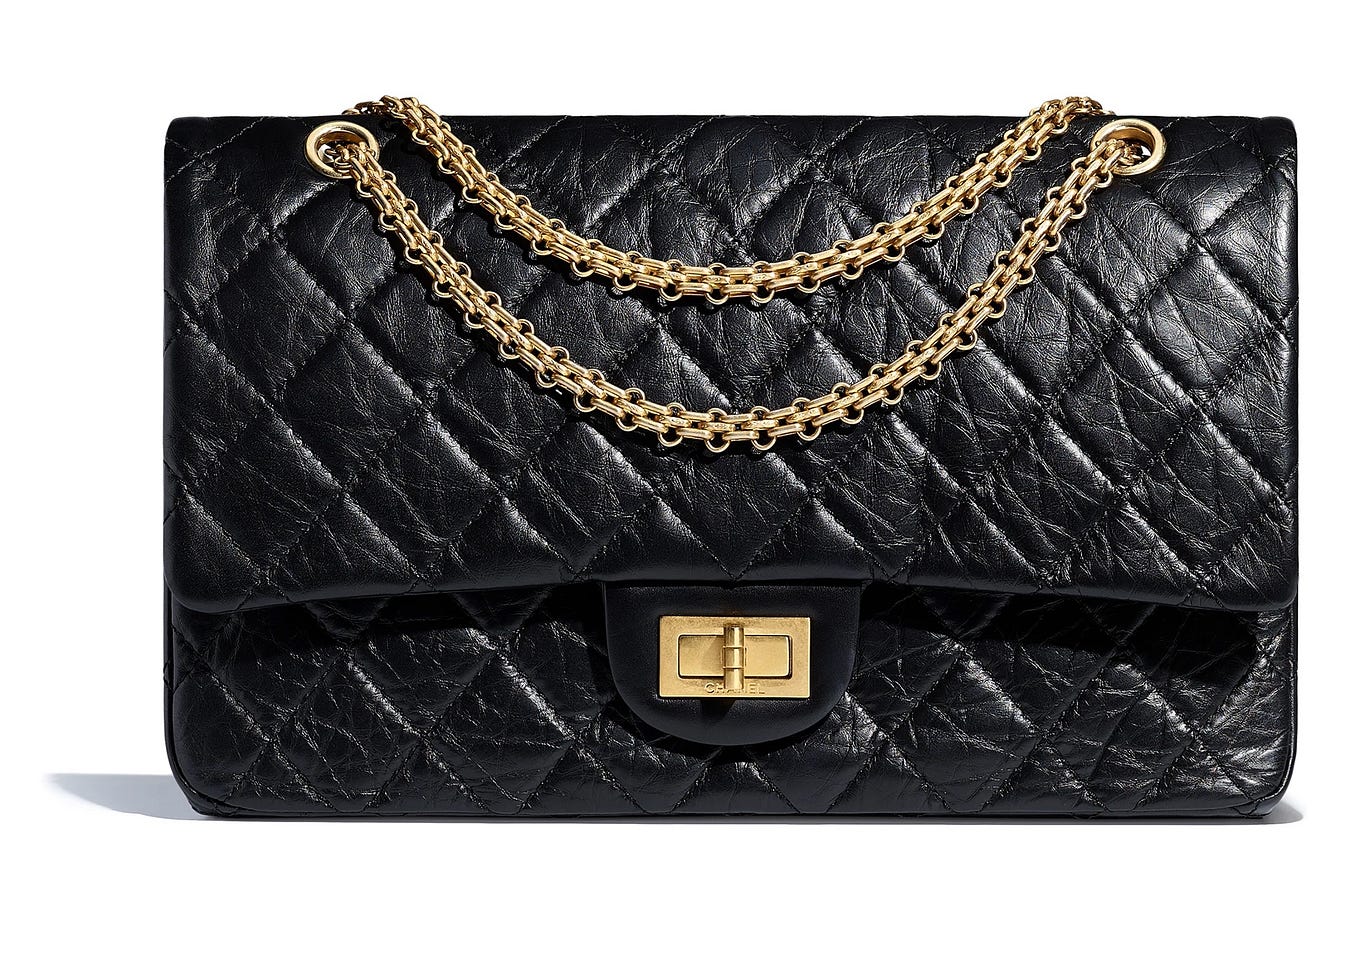 Chanel Bag Prices Euro, Bragmybag